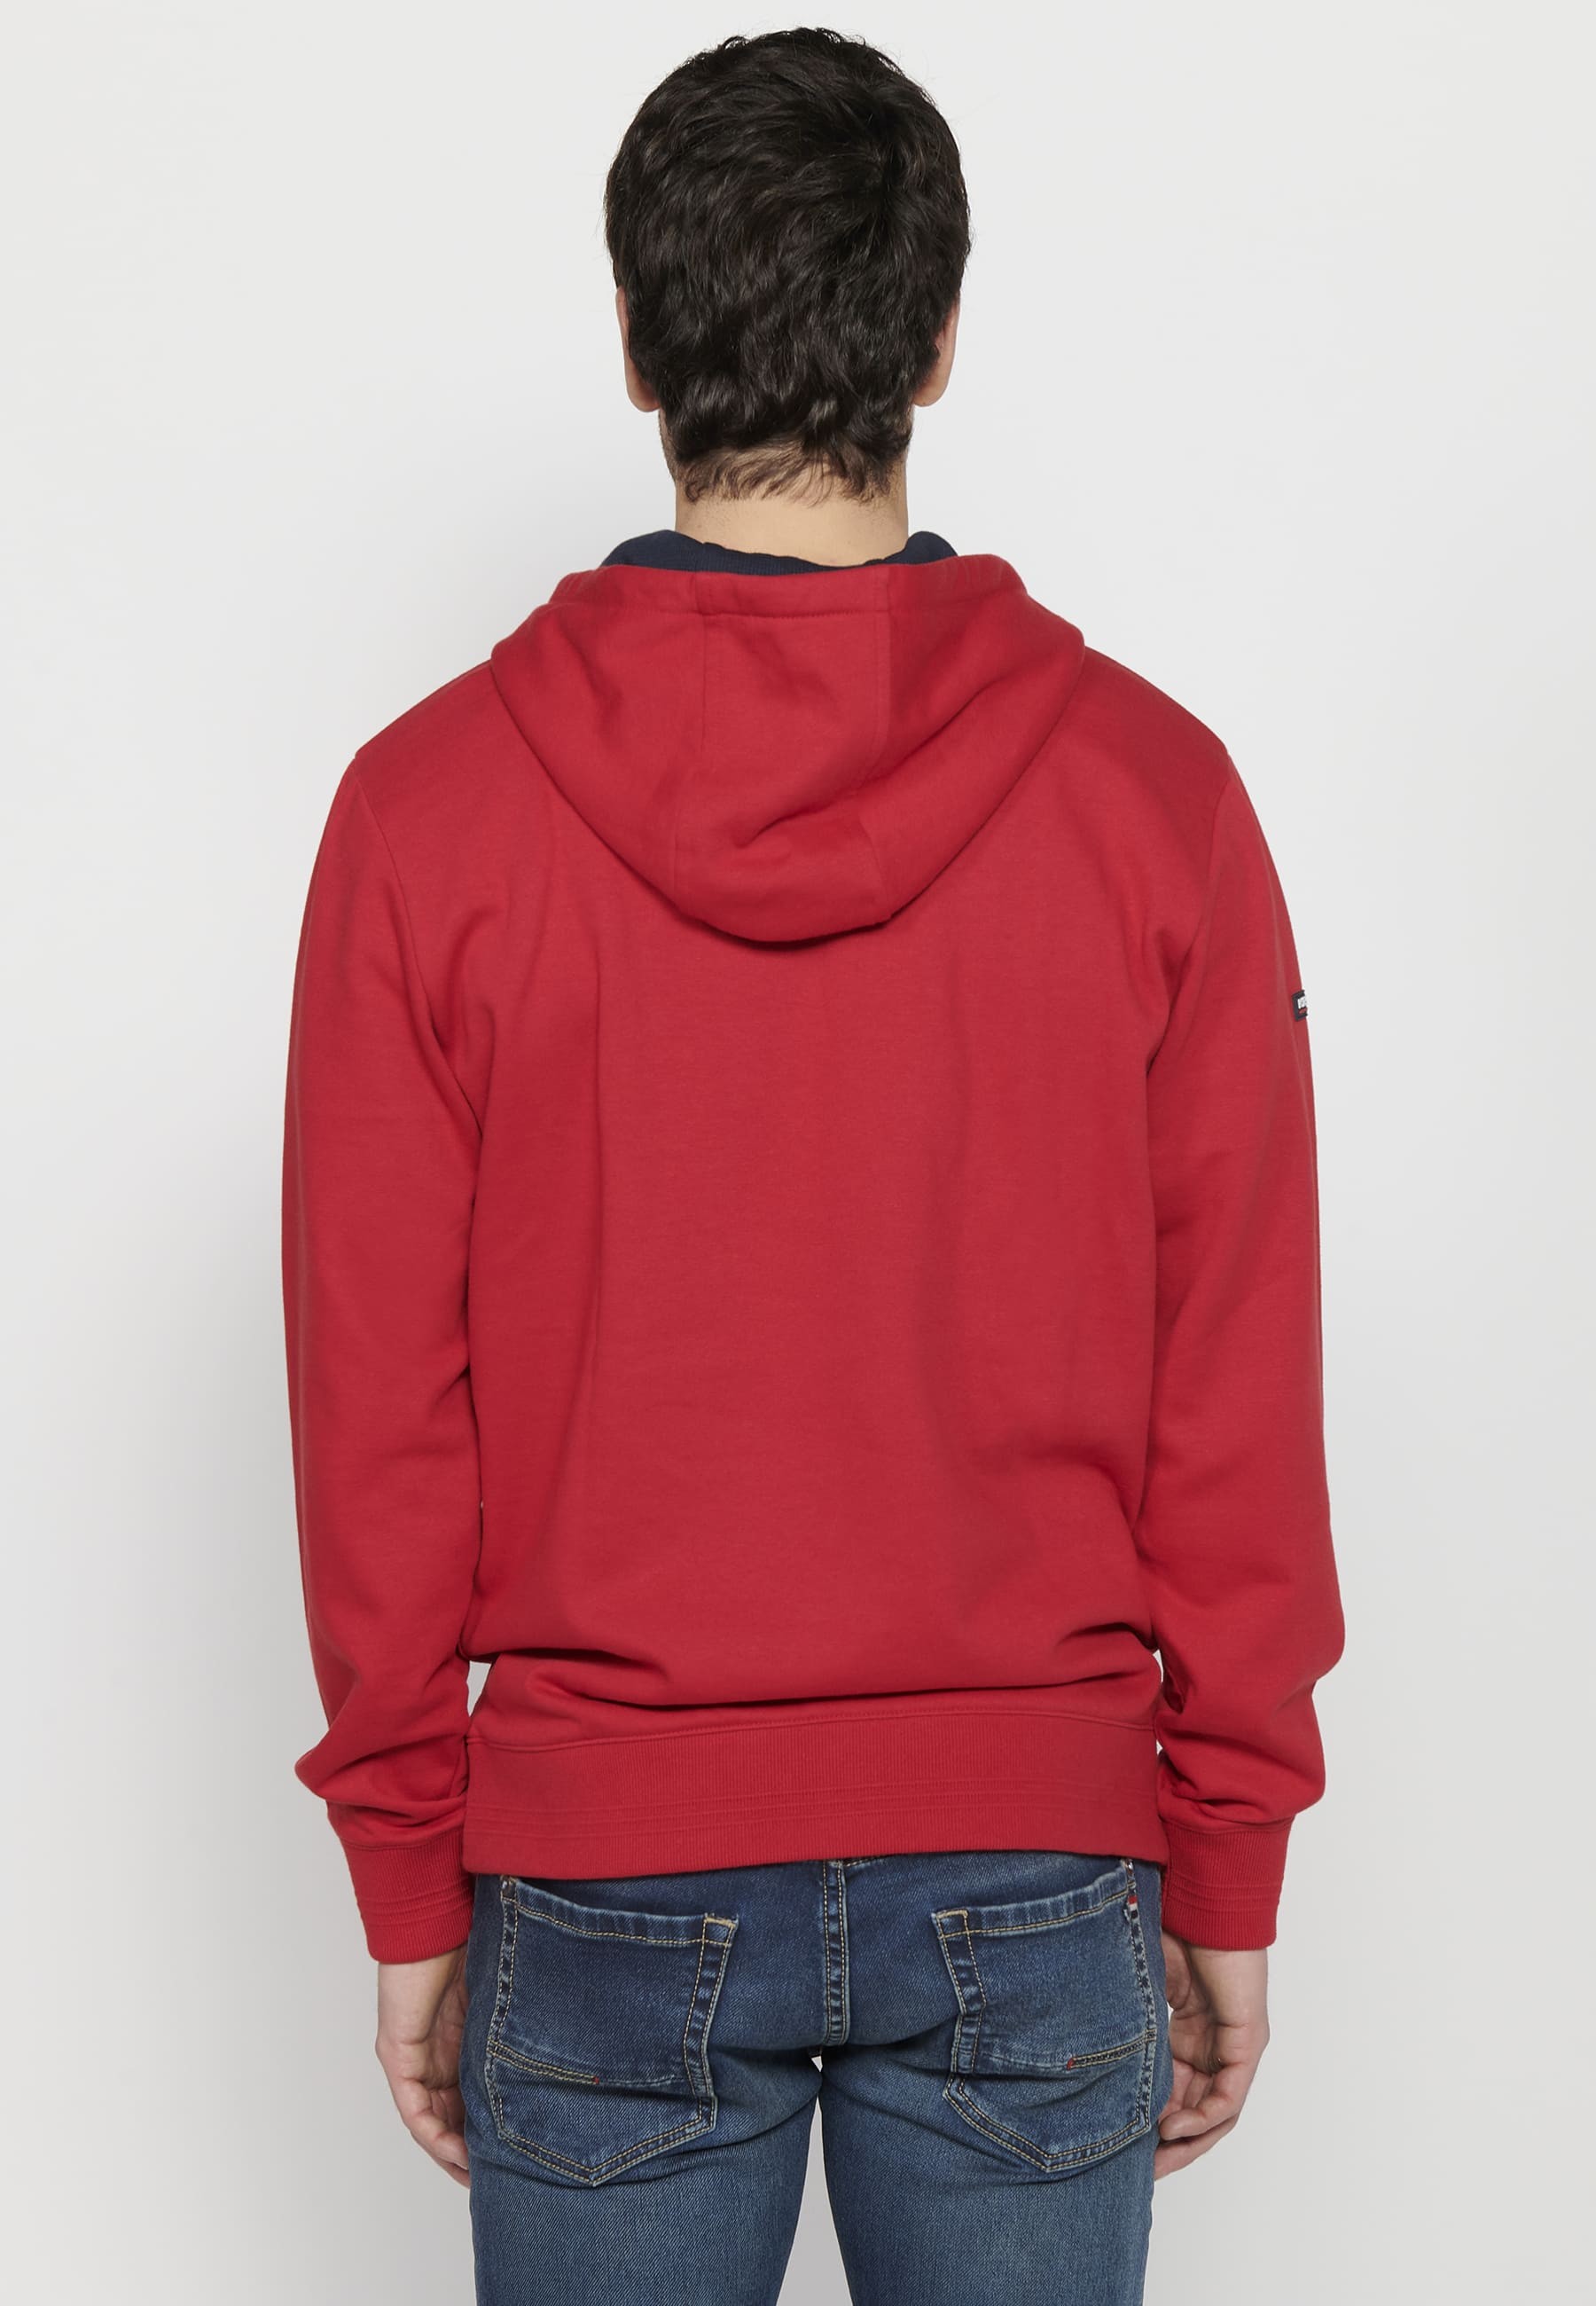 Herren-Sweatshirt mit Kapuze und langen Ärmeln in Rot mit geprägtem Detail vorne 8